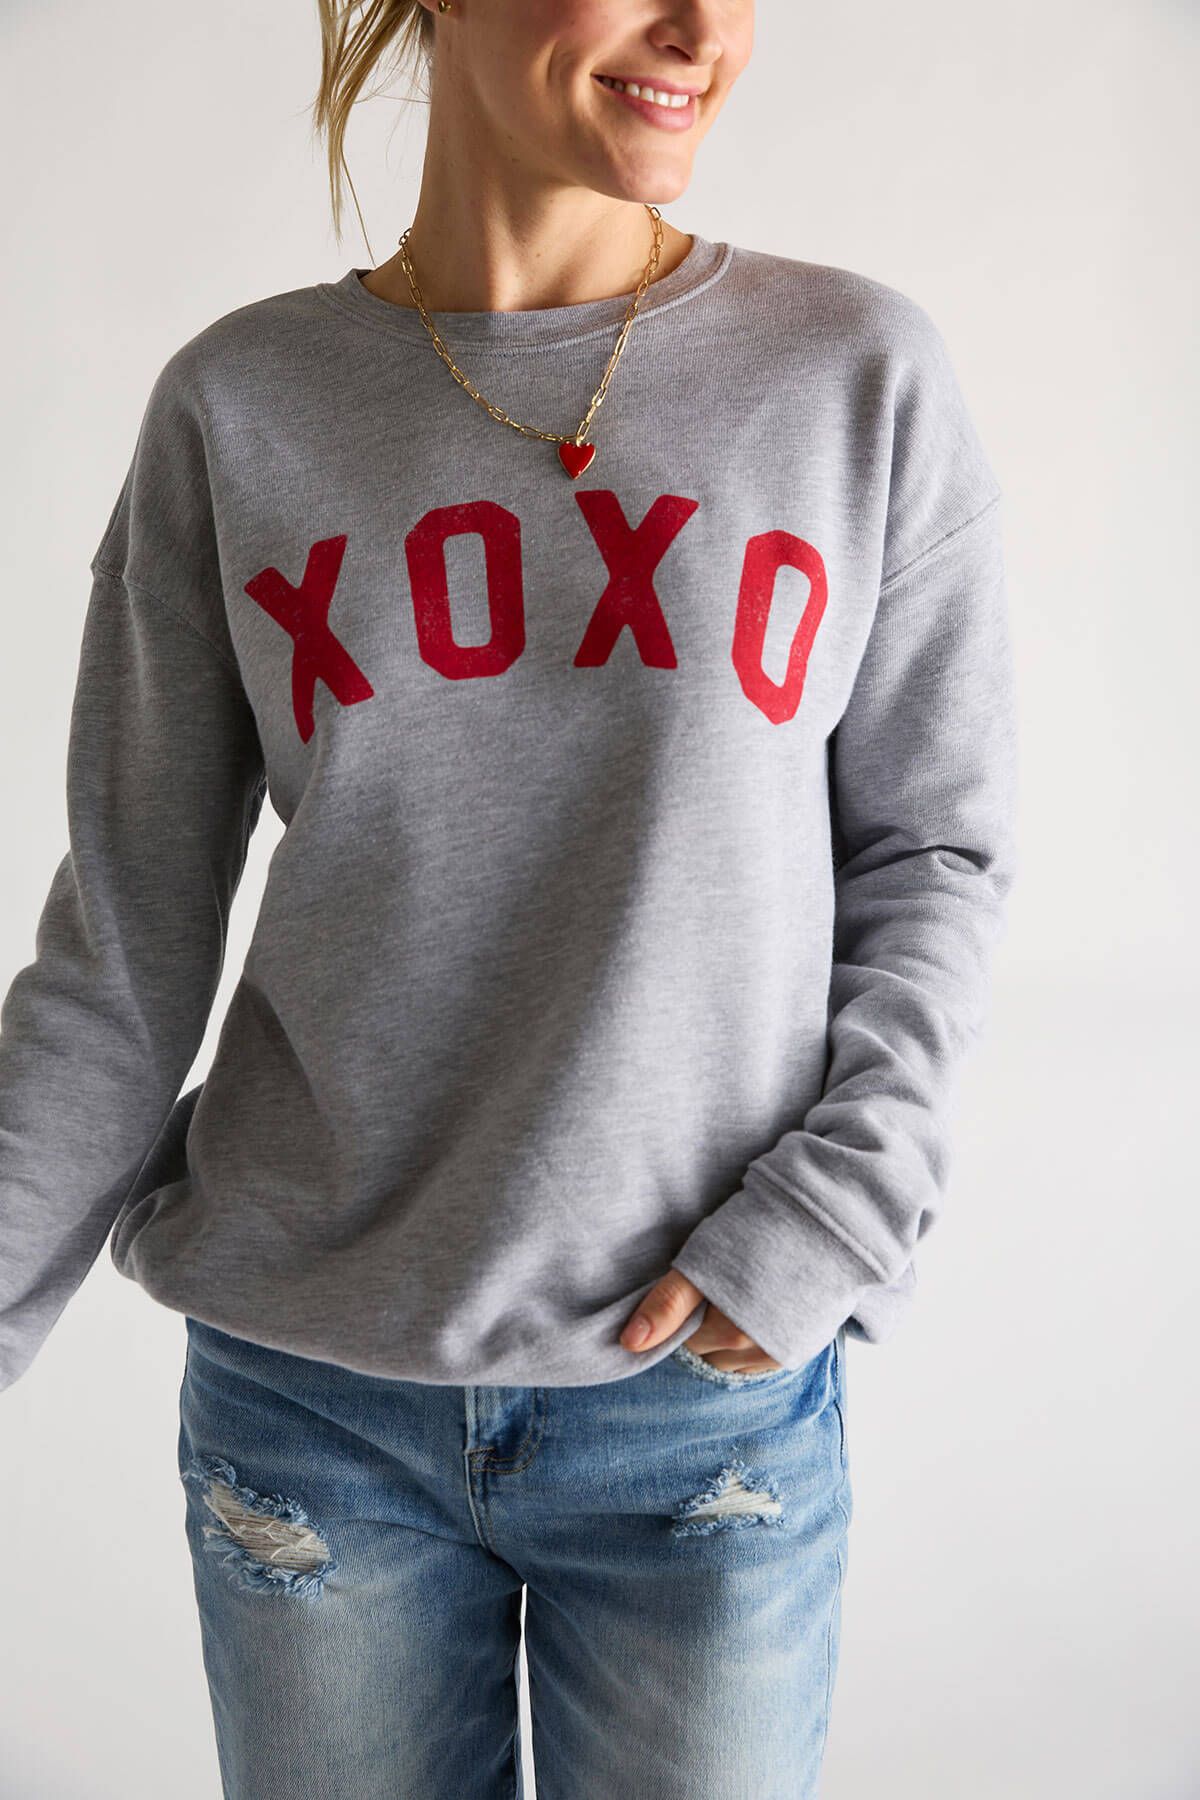 Oat Collective XOXO Sweatshirt | Social Threads